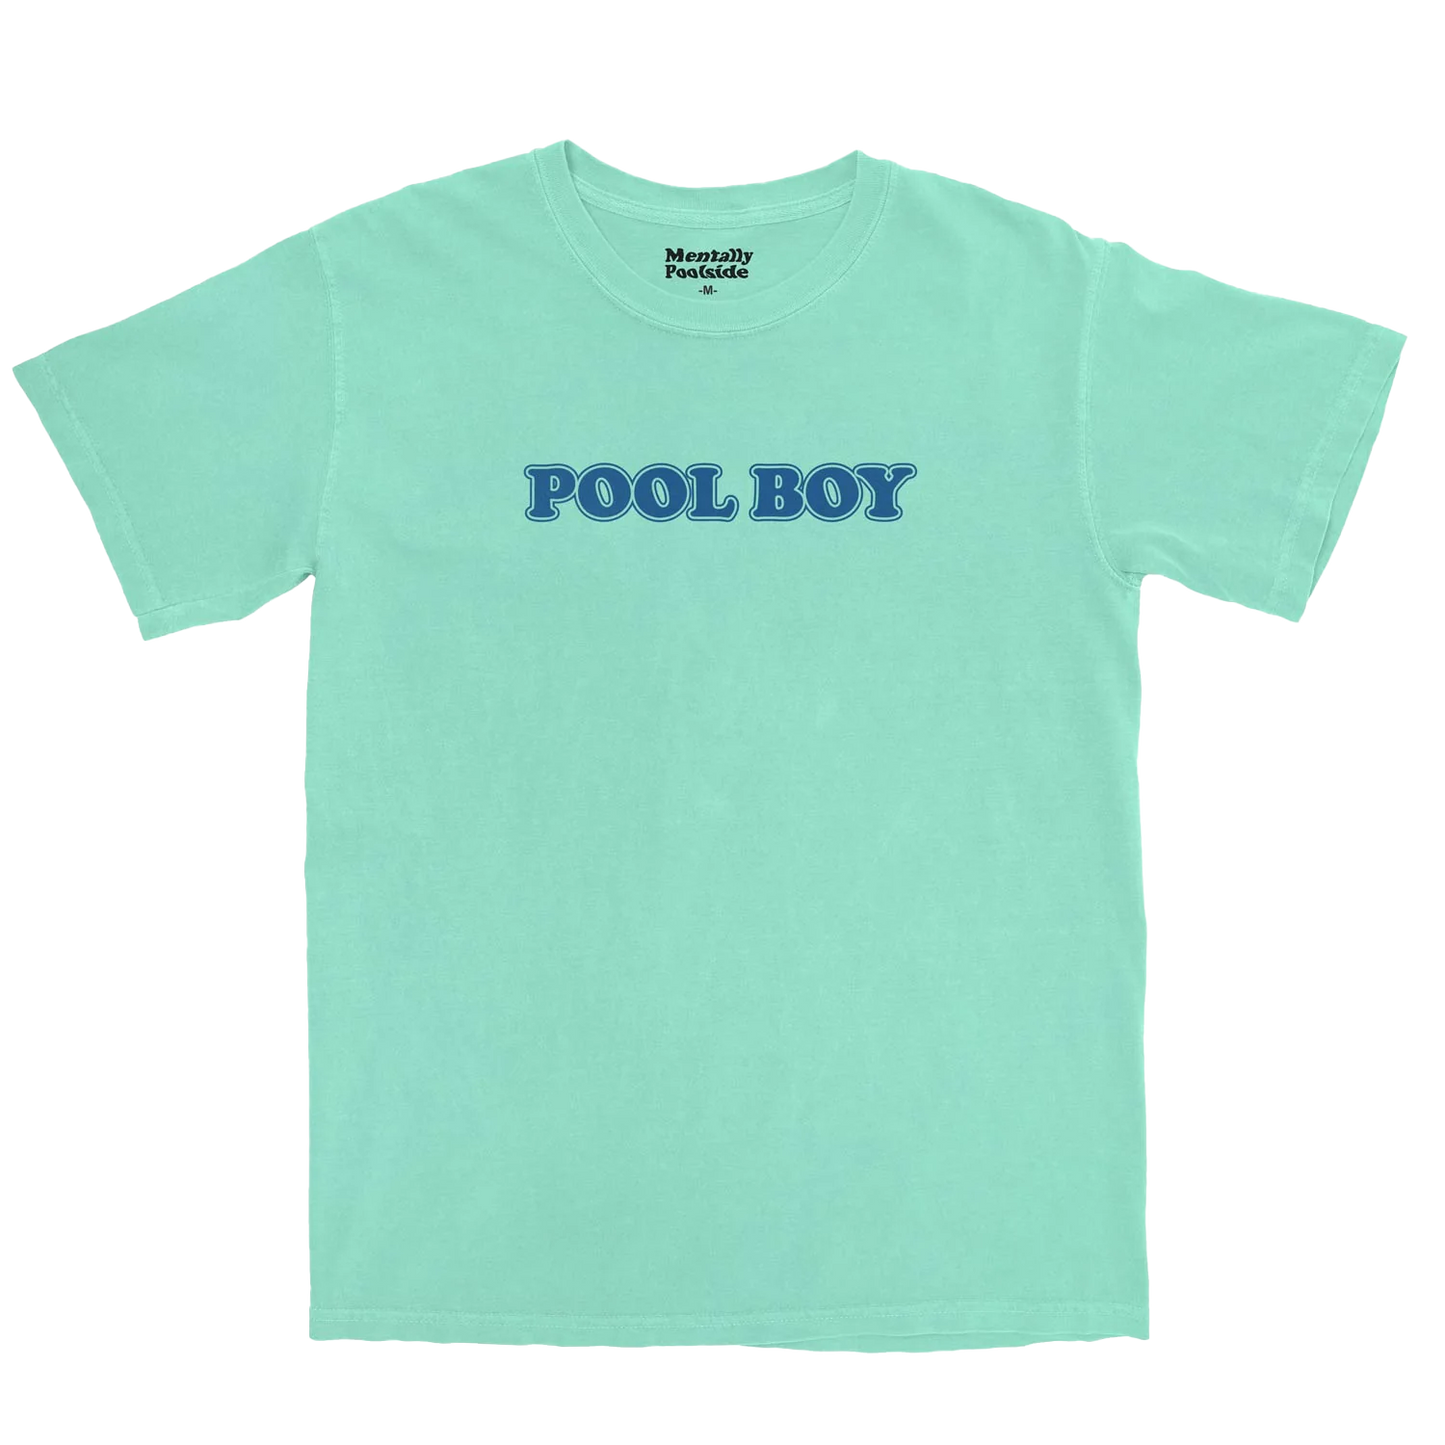 Pool Boy